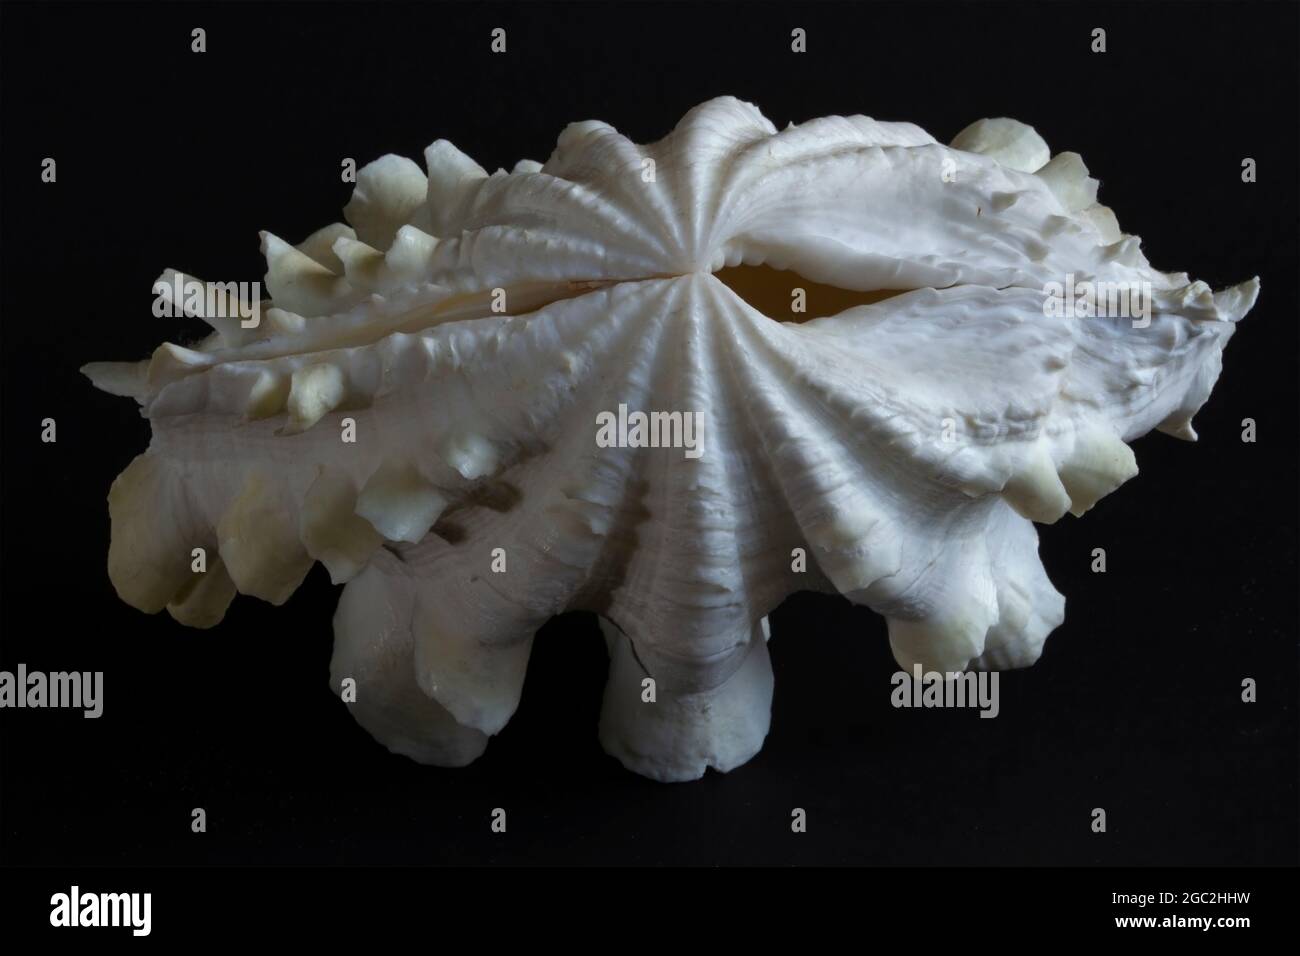 Fili di alghe immagini e fotografie stock ad alta risoluzione - Alamy